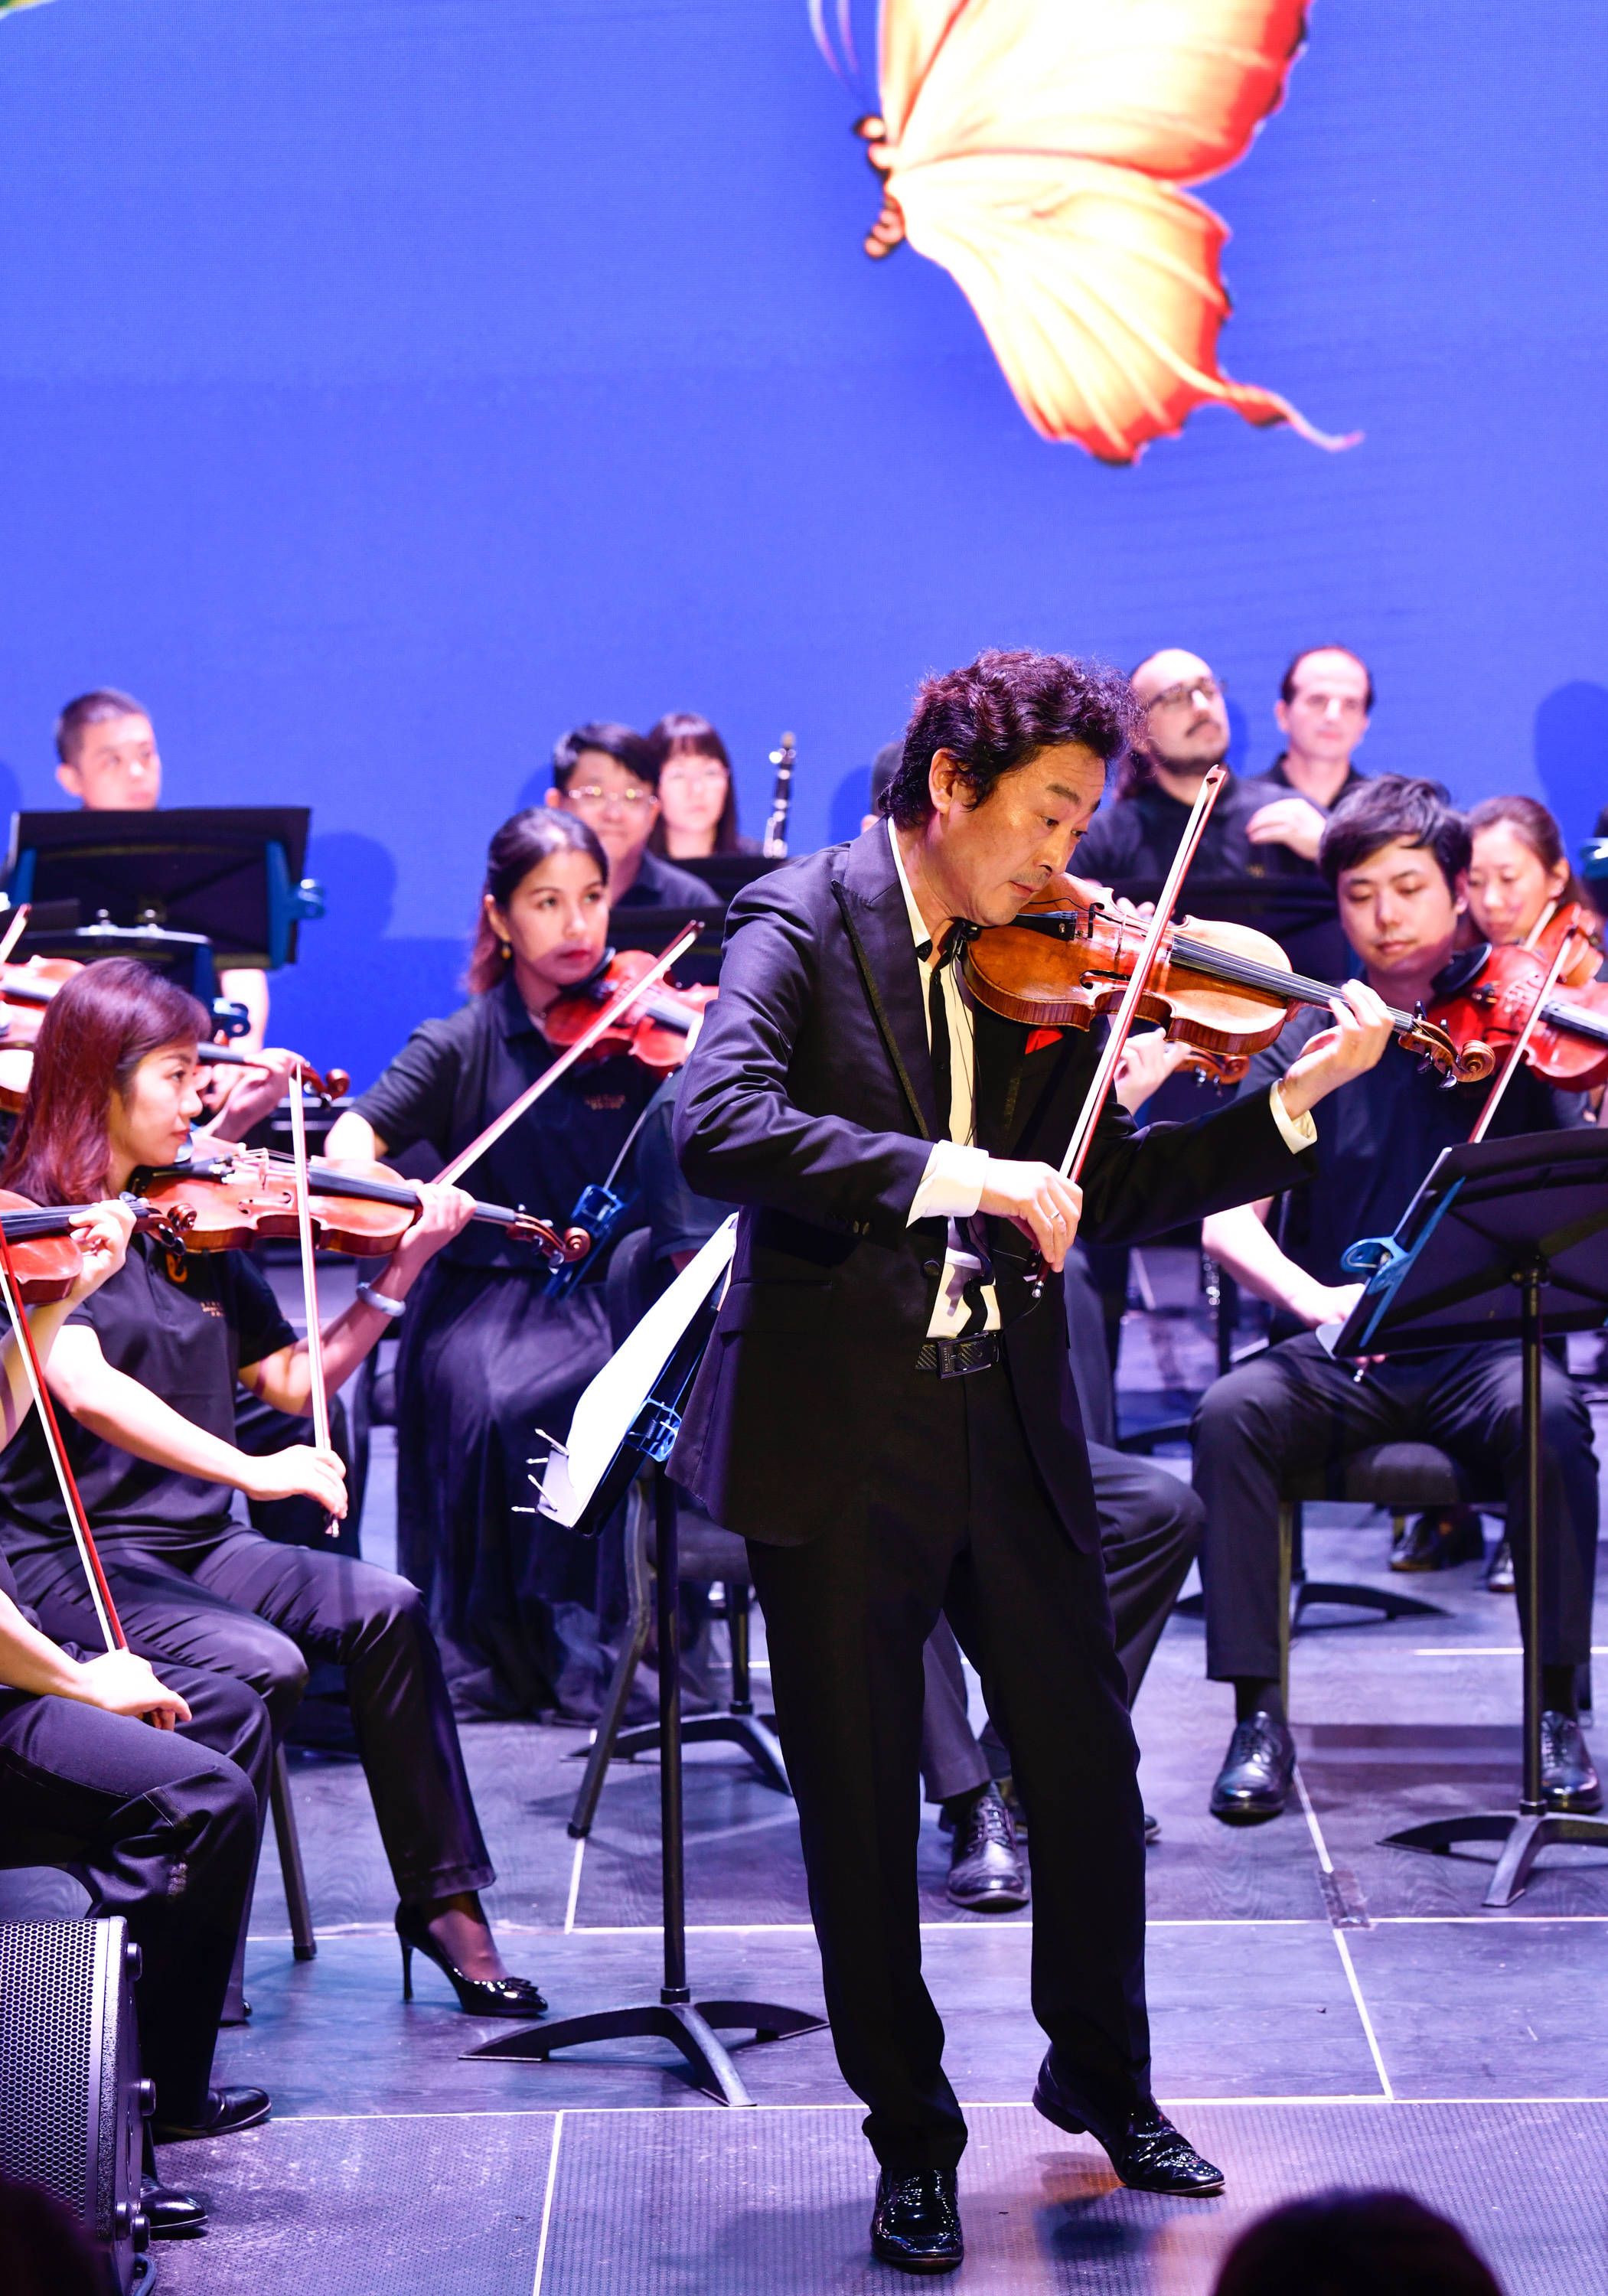 8月17日,在天津大剧院平台剧场,小提琴演奏家吕思清在演奏